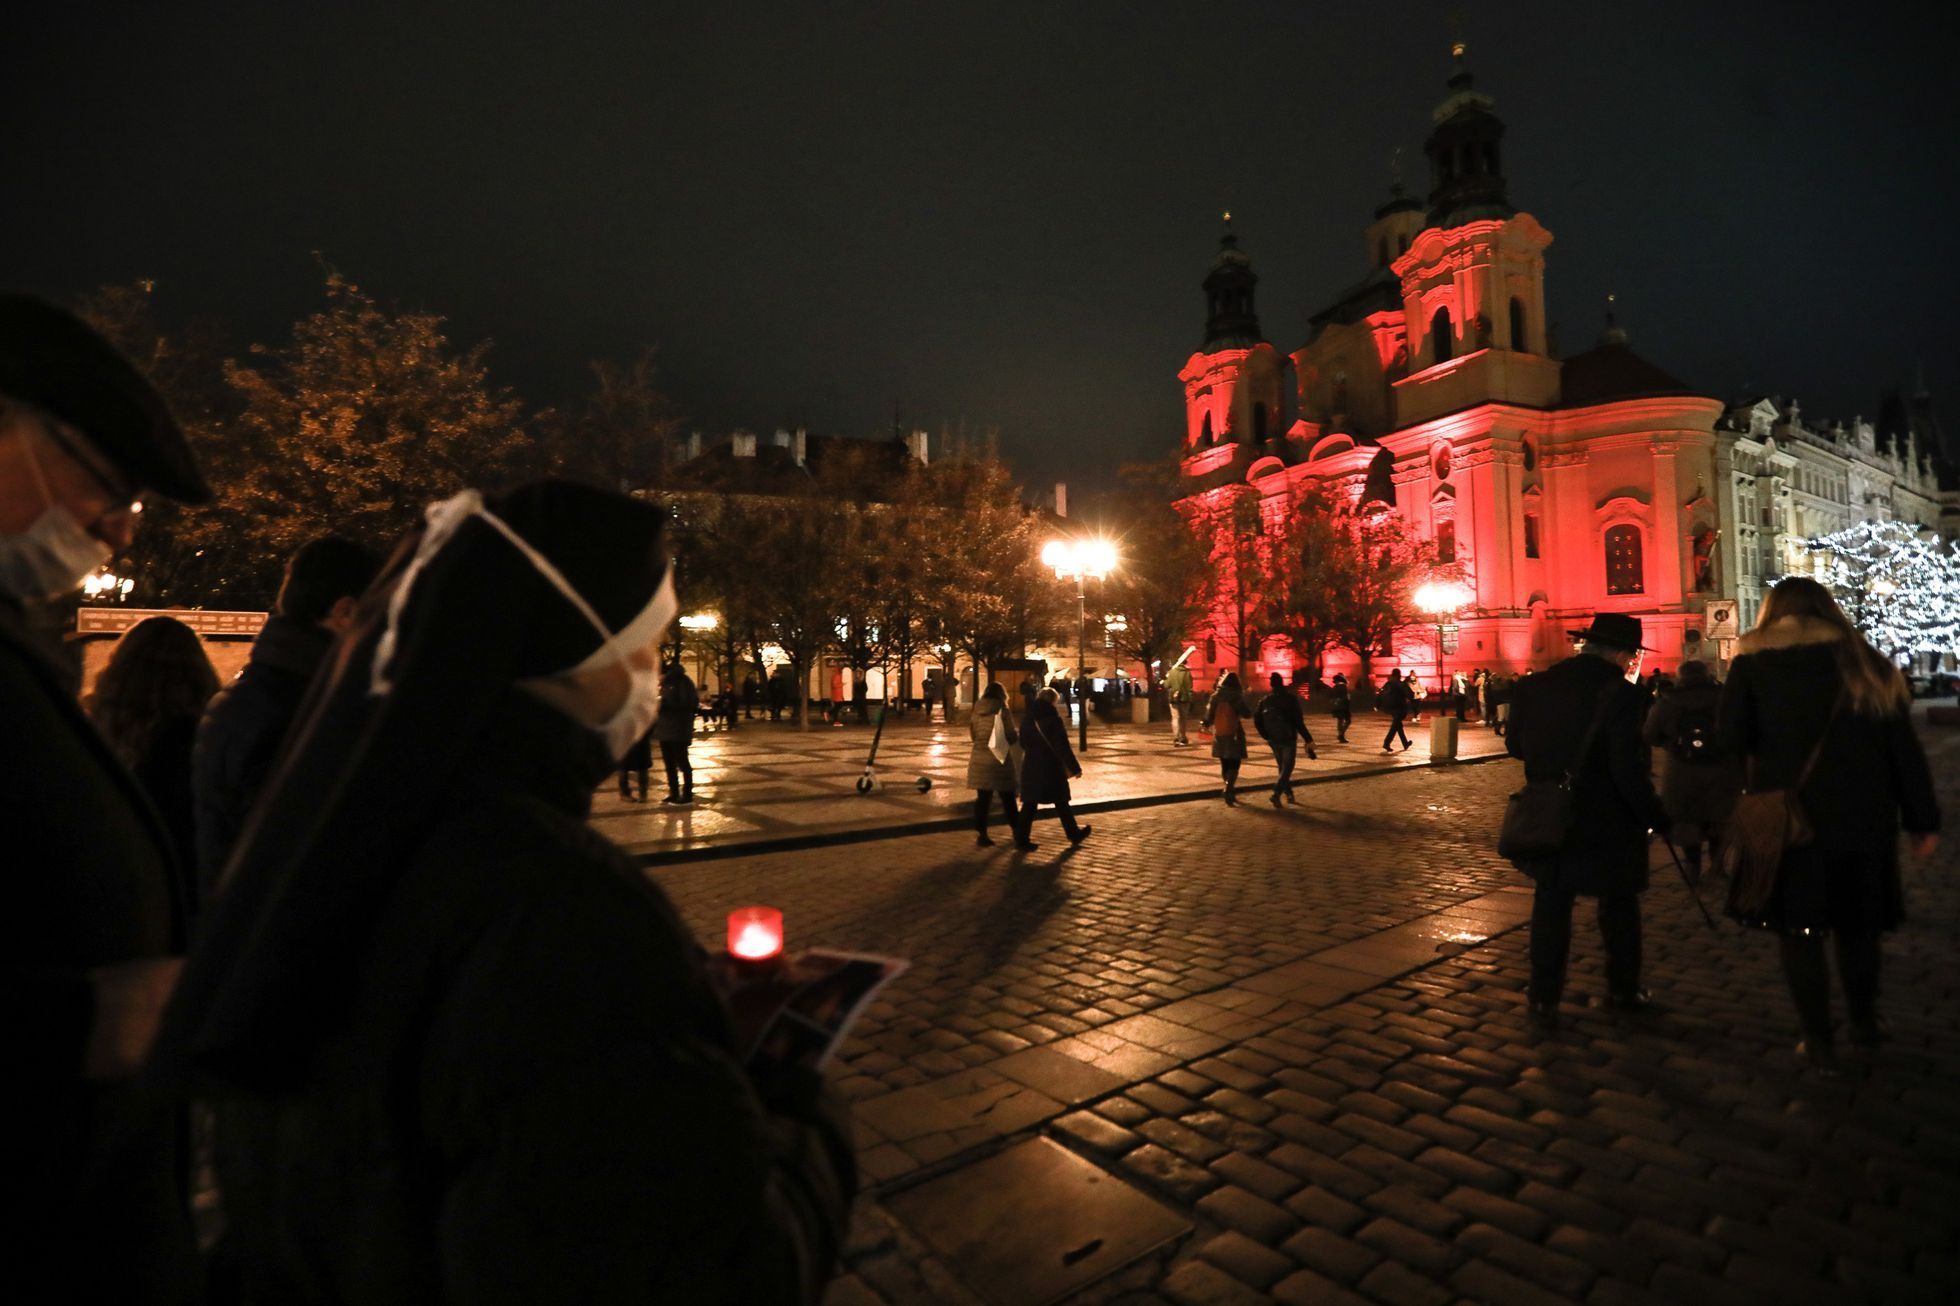 Červená středa - pochod kolem červeně nasvícených budov za lidi pronásledované pro svou víru, 25. 11. 2020